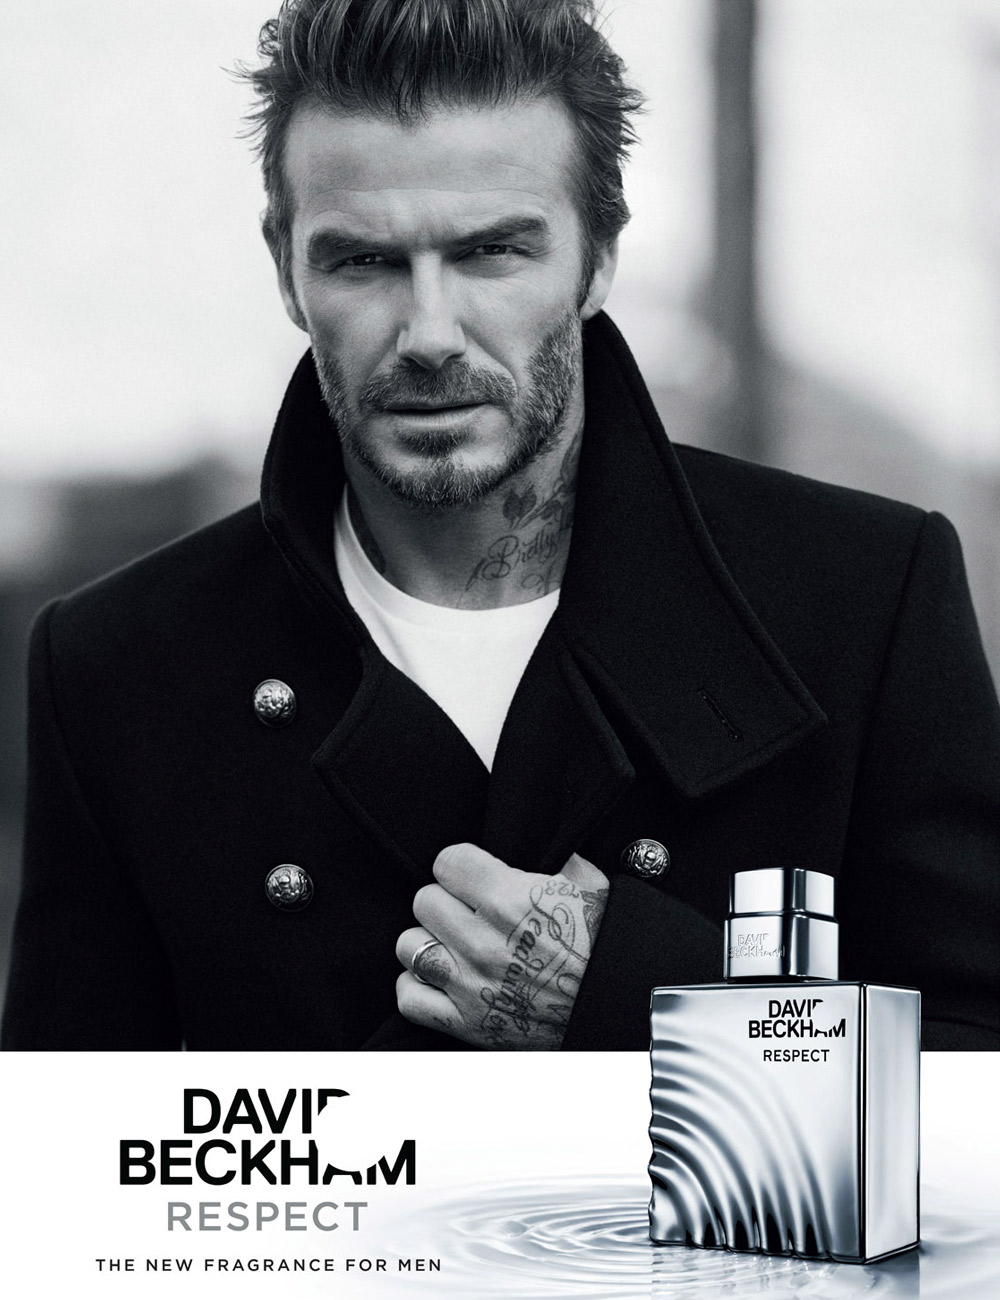 David Beckham er sej, og hans nye duftevand kræver respekt